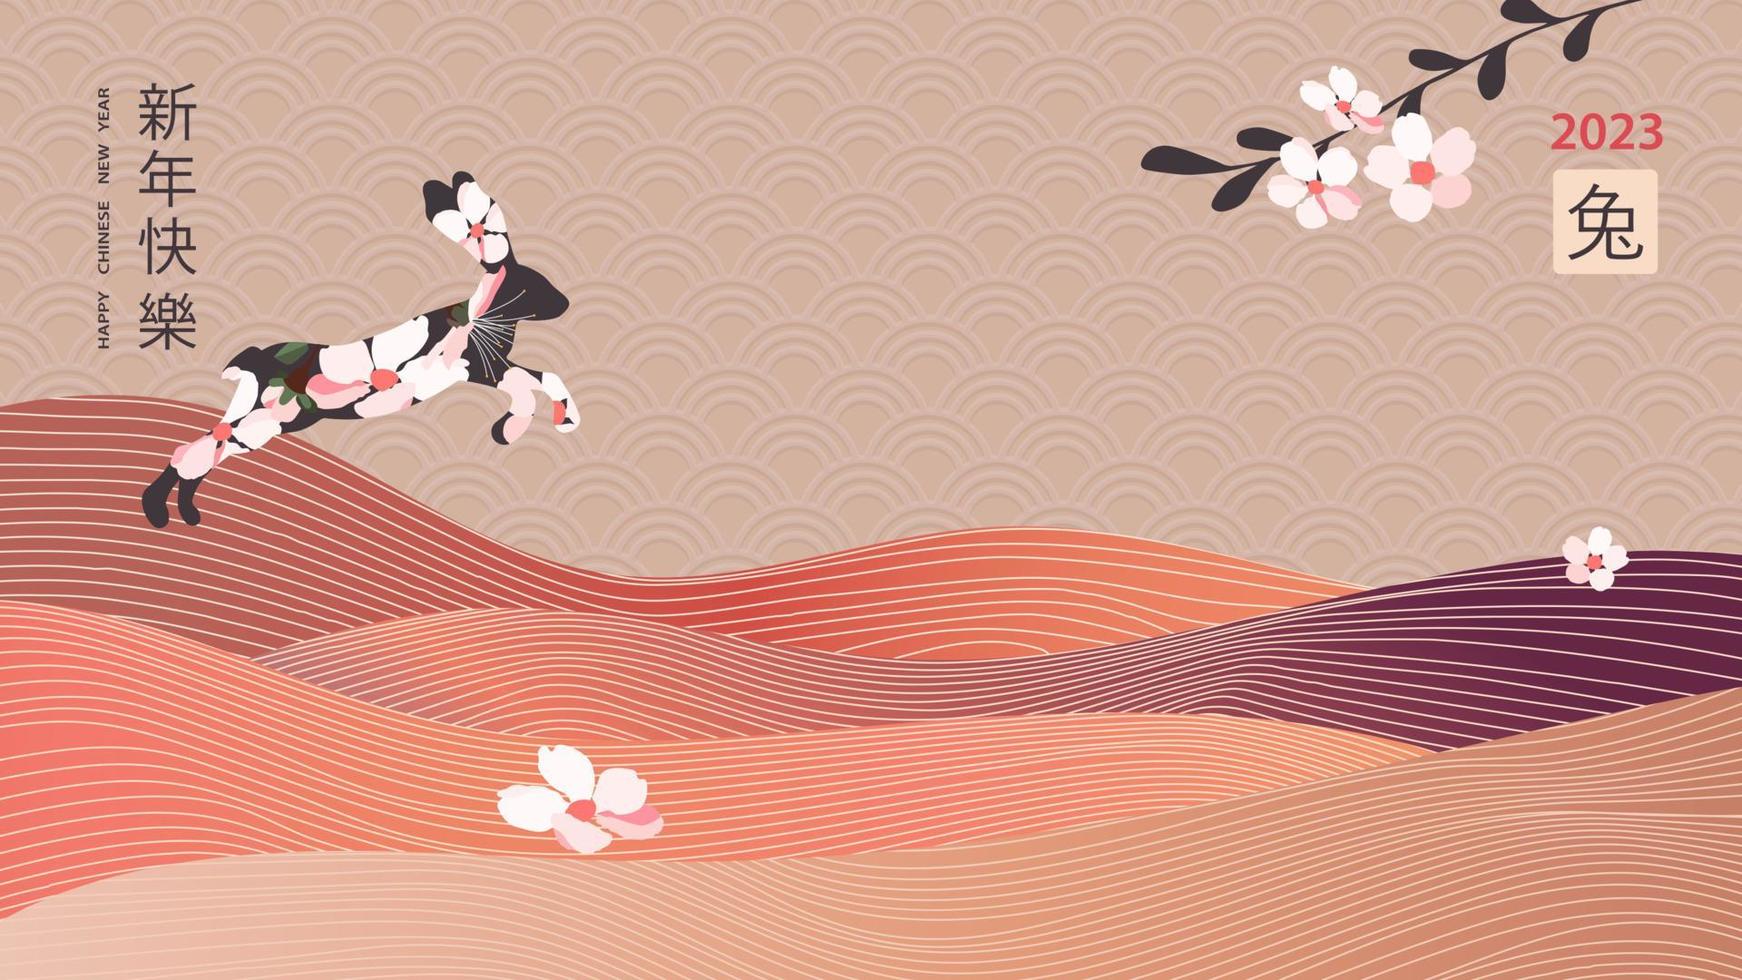 Lycklig ny kinesisk år. stiliserade kort med Hoppar kanin, sakura gren och orientalisk stil berg layout design. översättning från kinesisk - Lycklig ny år, kanin symbol. vektor illustration